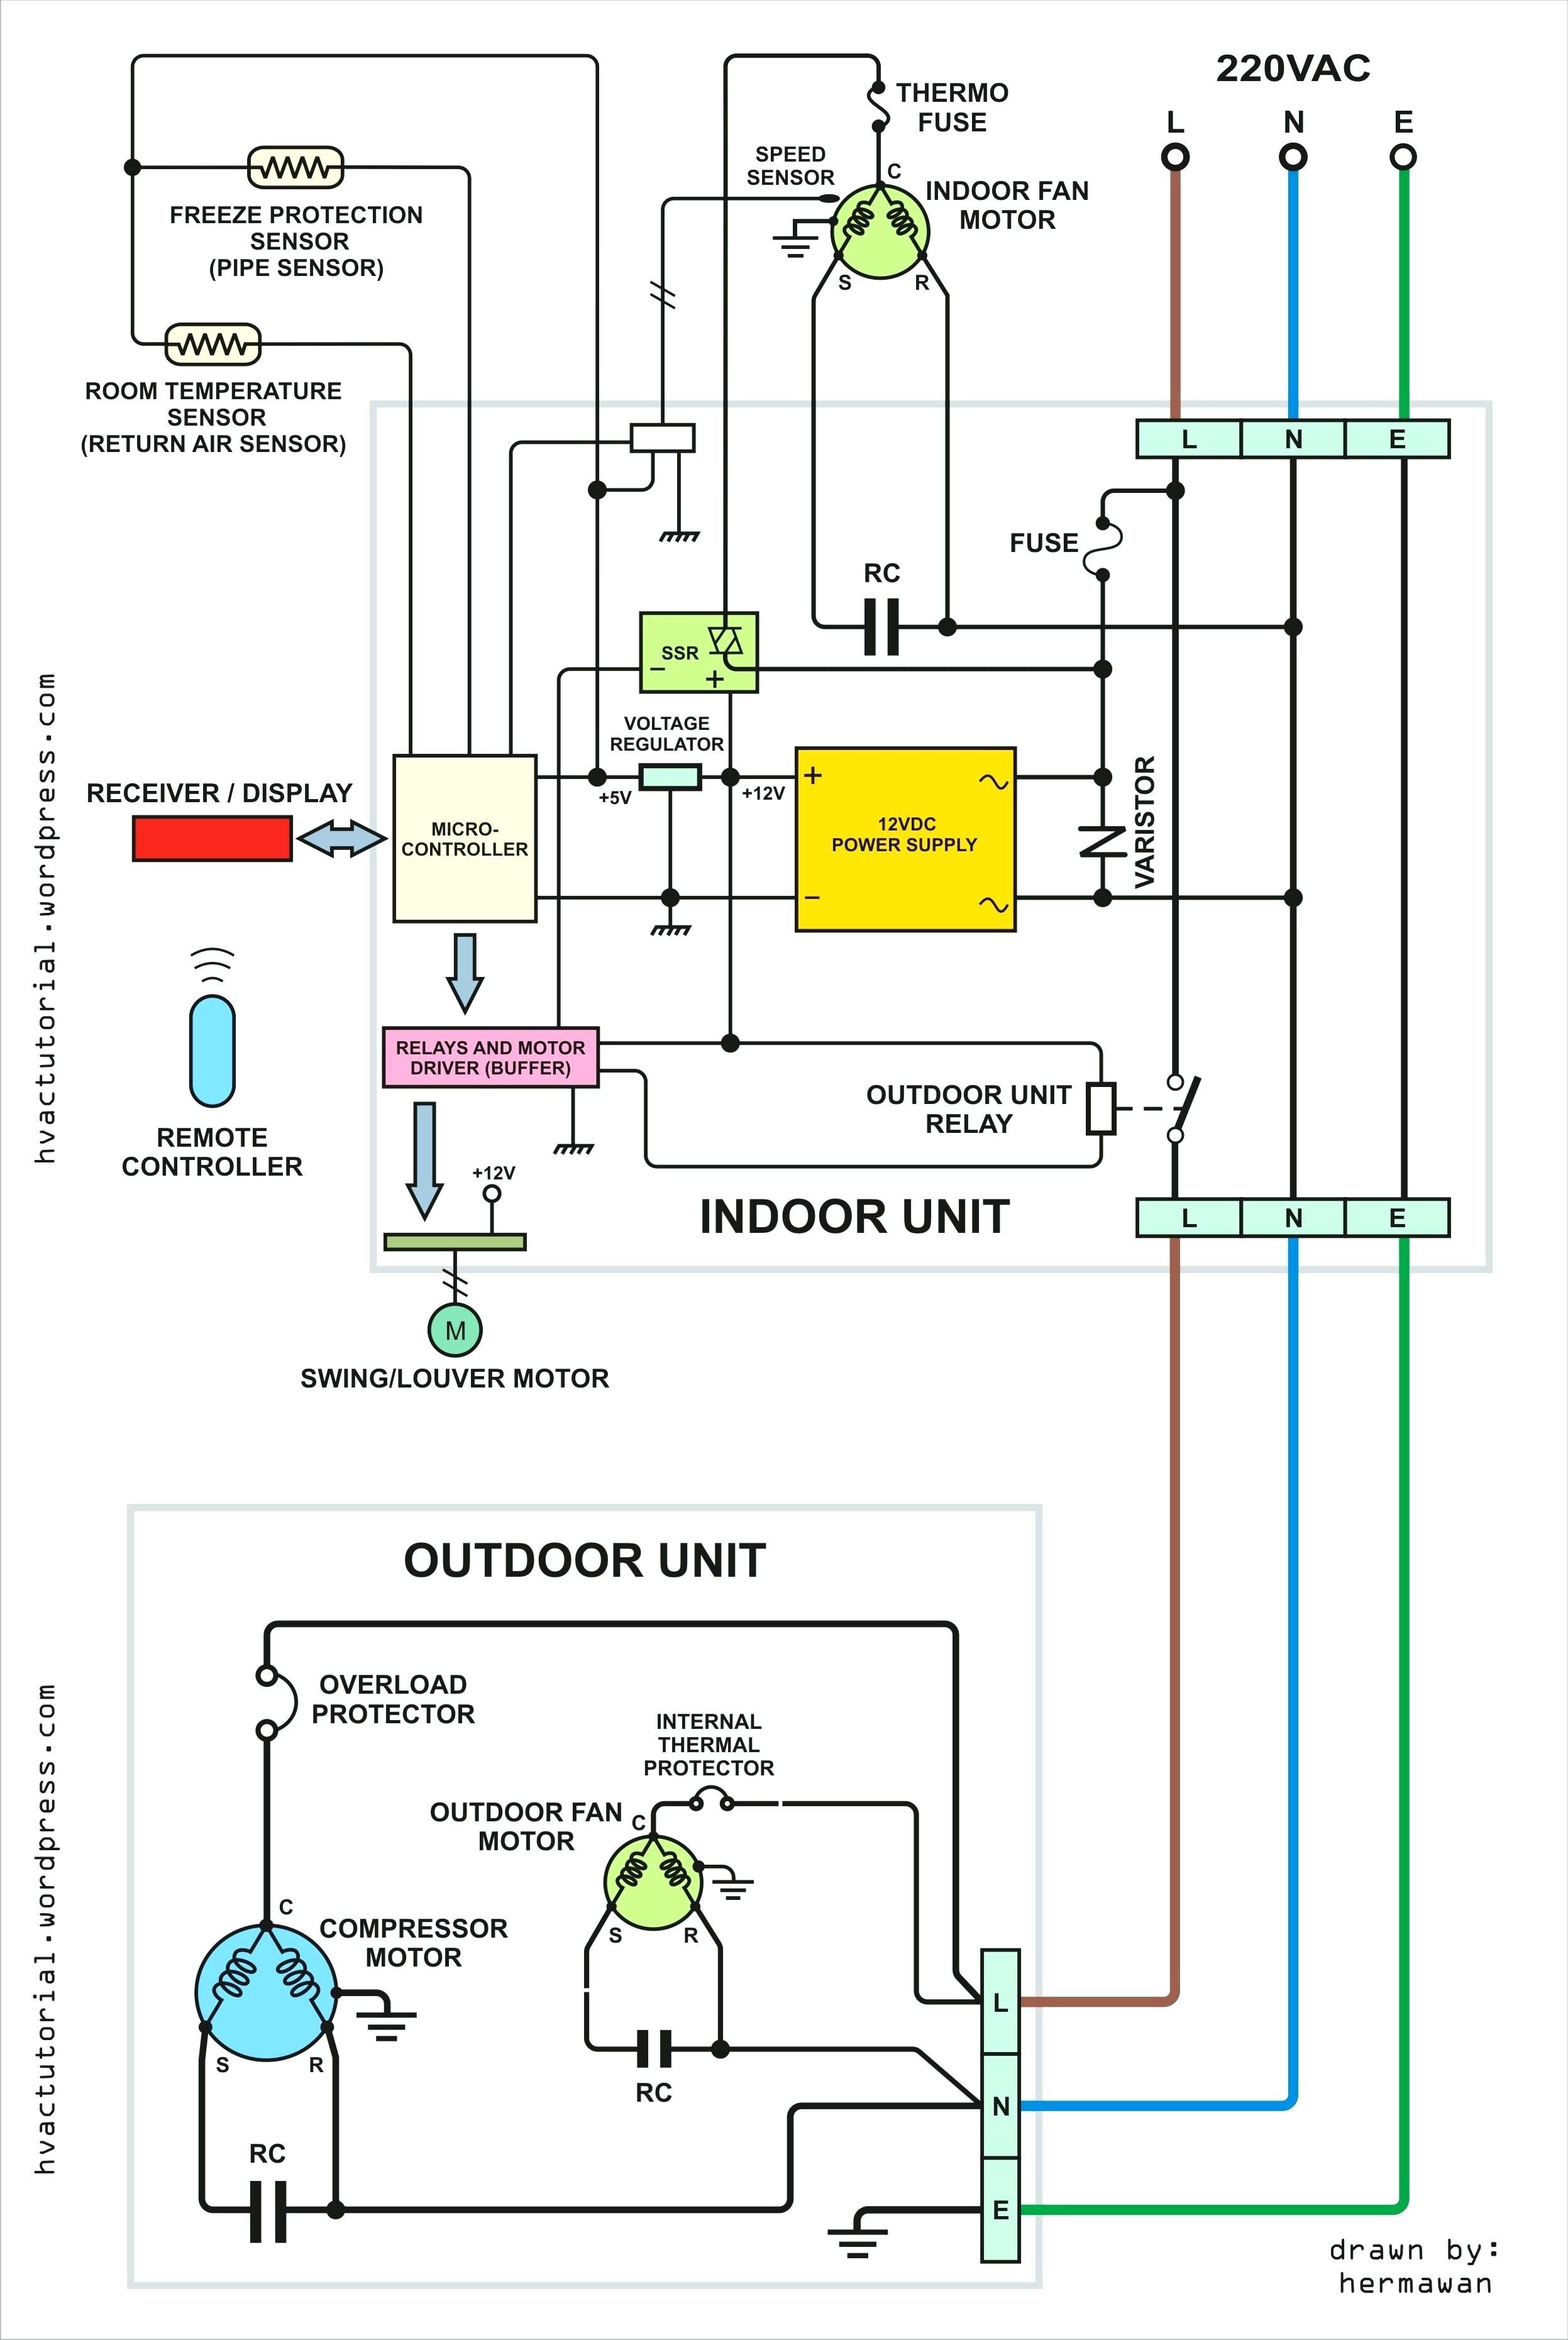 Central Air Conditioner Parts Diagram Ac Blower Motor Wiring Diagram Of Central Air Conditioner Parts Diagram